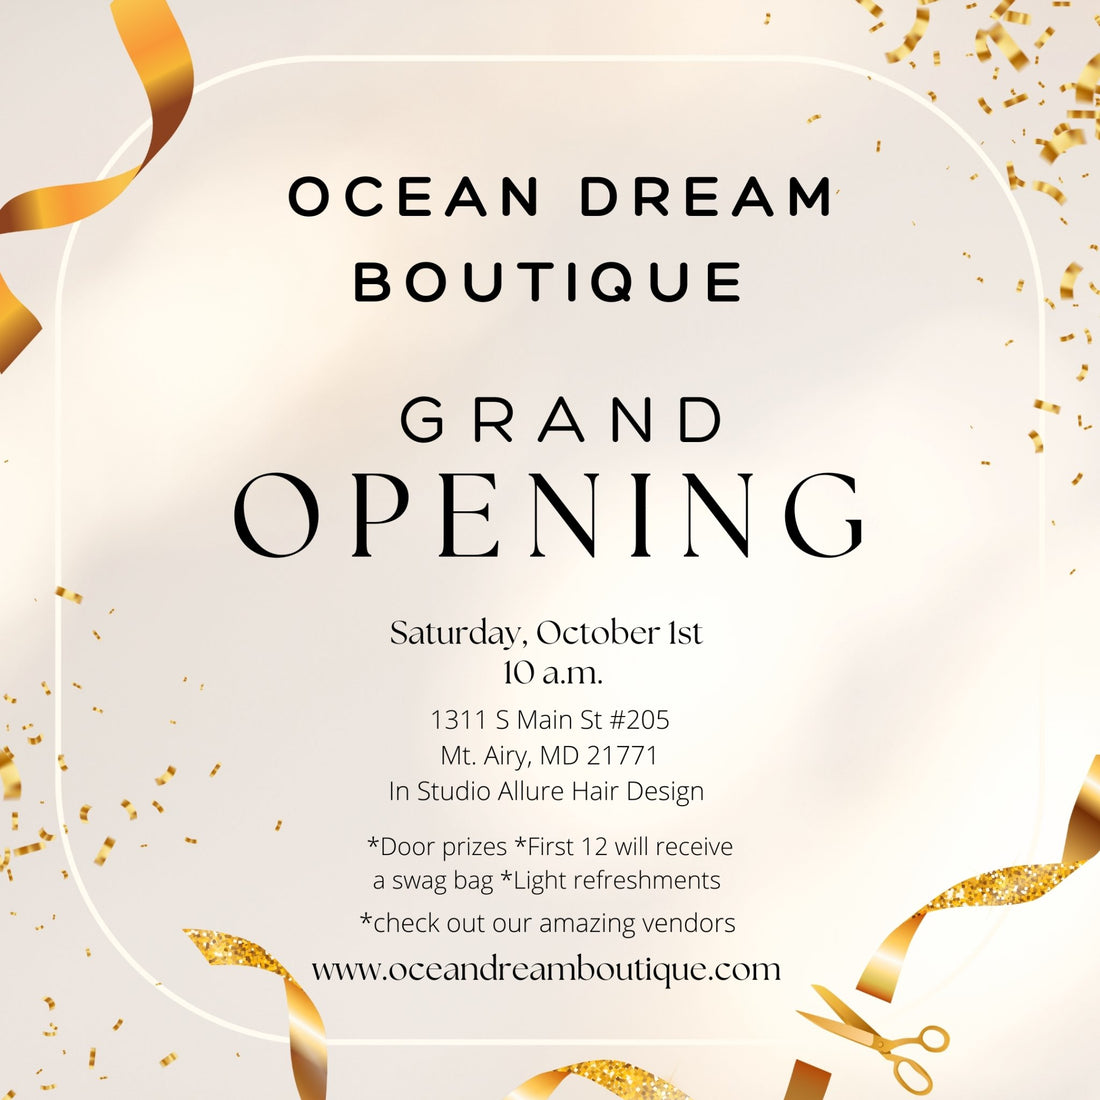 Ocean Dream Boutique Grand Opening - Ocean Dream Boutique